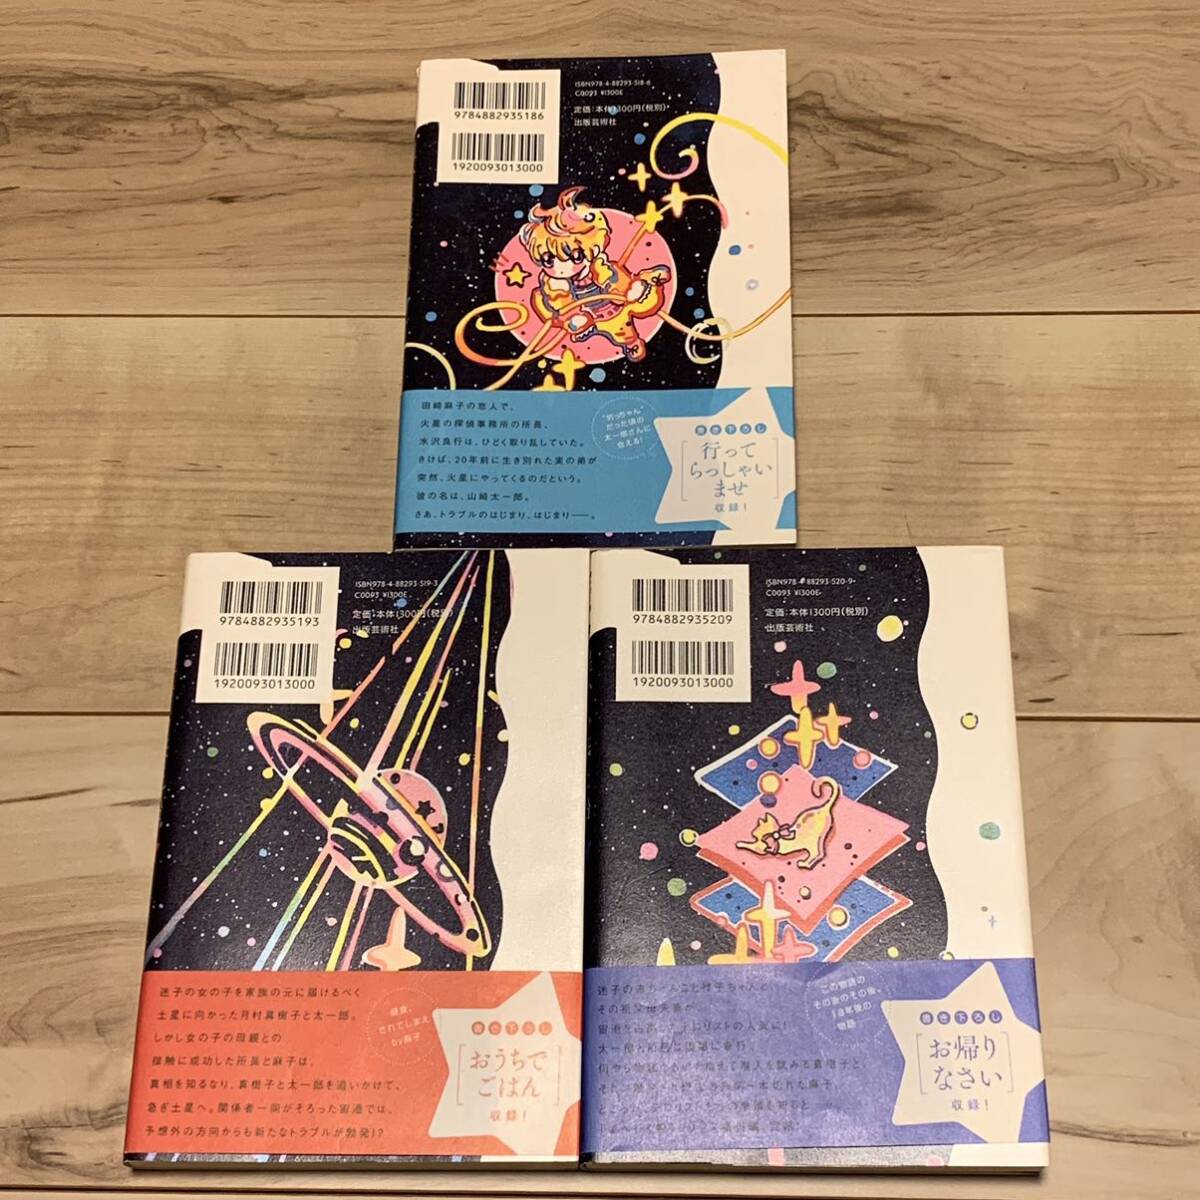 新井素子 星へ行く船シリーズ全8巻set 出版芸術社刊 SF